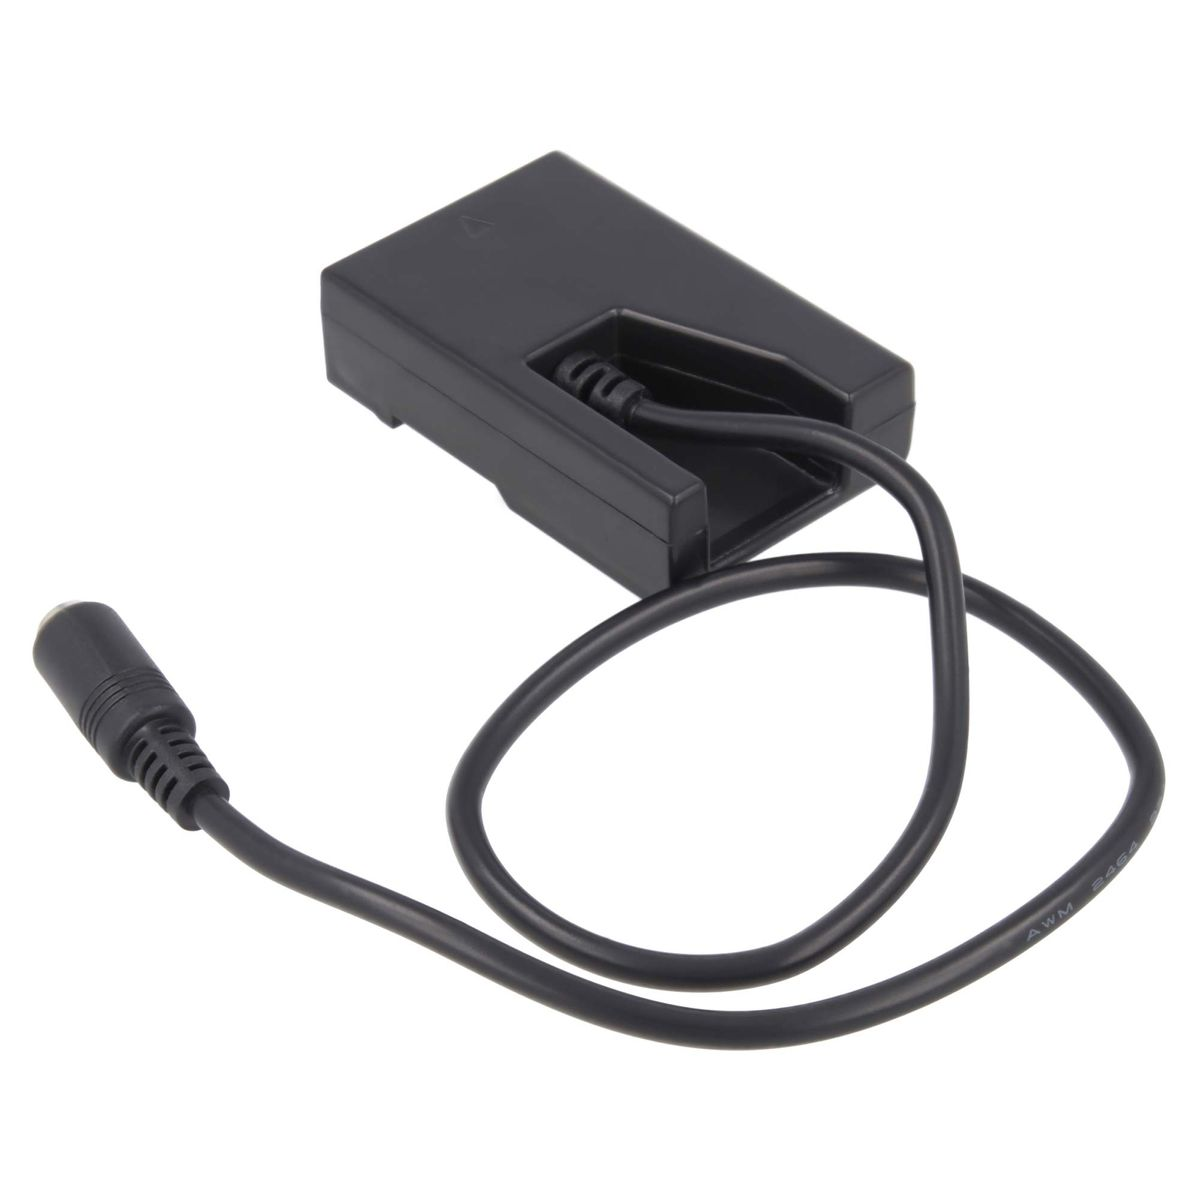 AKKU-KING USB-C Adapter + Angabe Nikon, Kuppler keine Nikon Ladegerät kompatibel mit EP-5